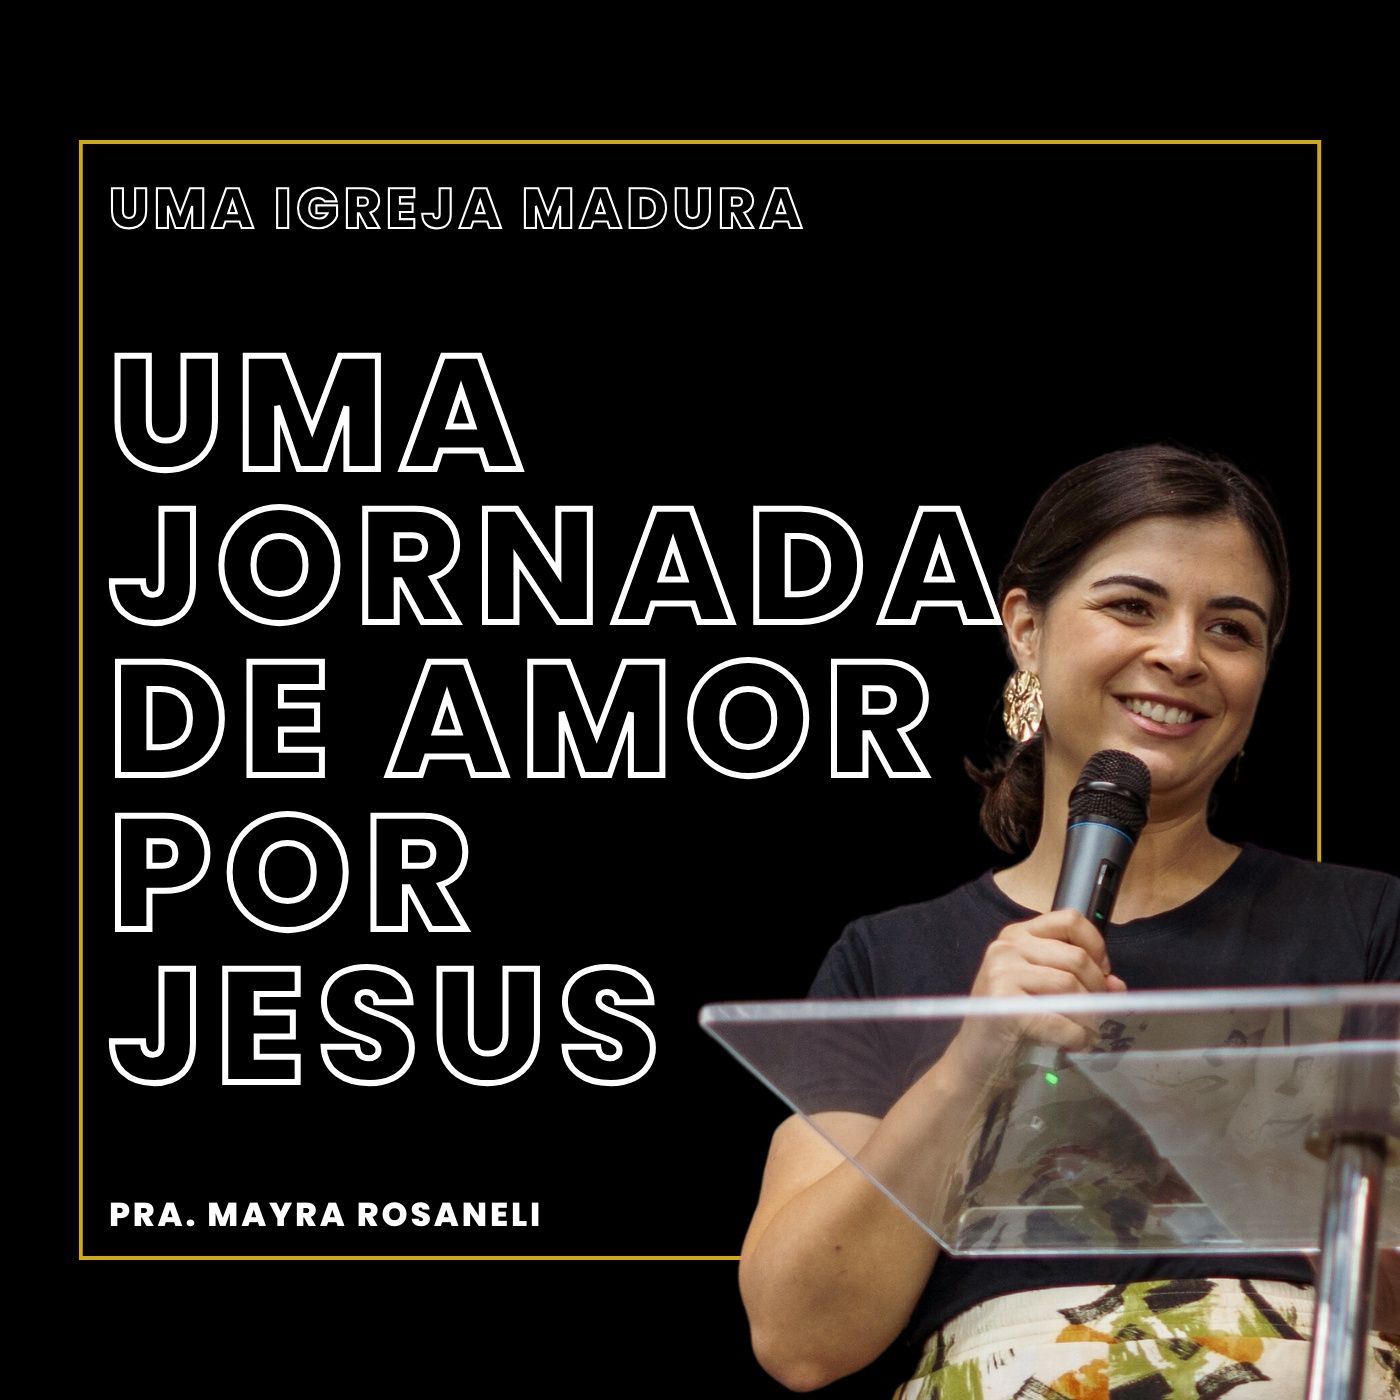 Uma jornada de amor por Jesus // Pra. Mayra Rosaneli